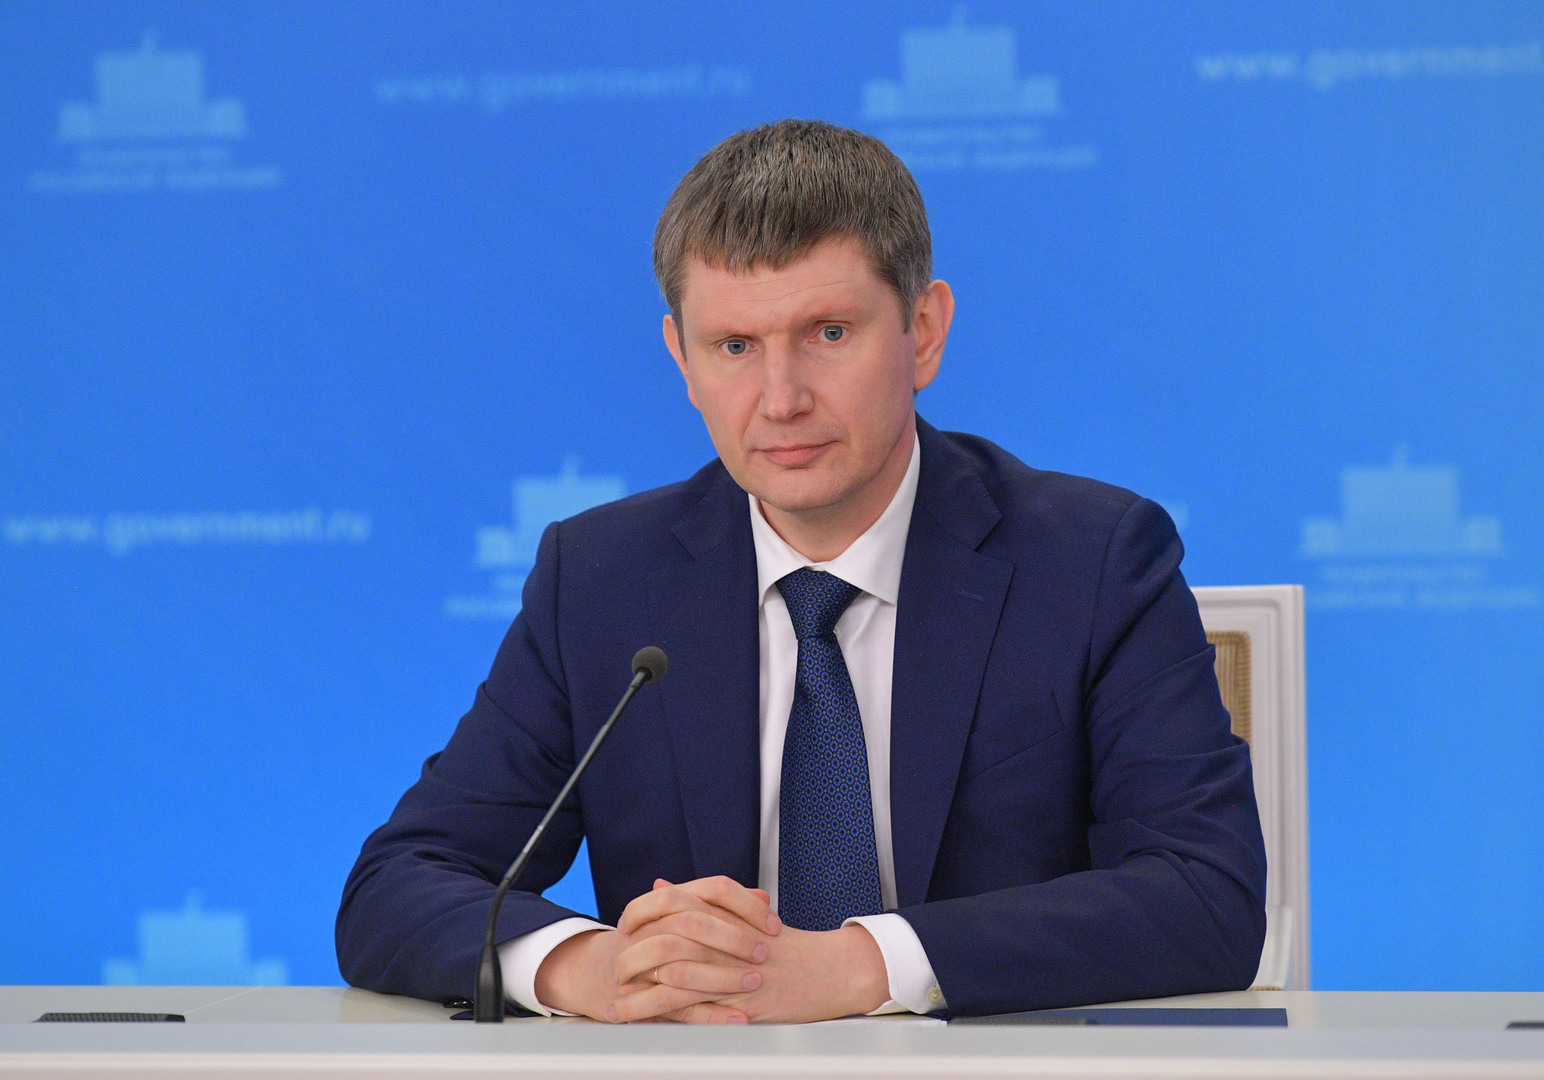 وزير الاقتصاد الروسي: عدد كبير من الشركات الأجنبية سيعود إلى روسيا